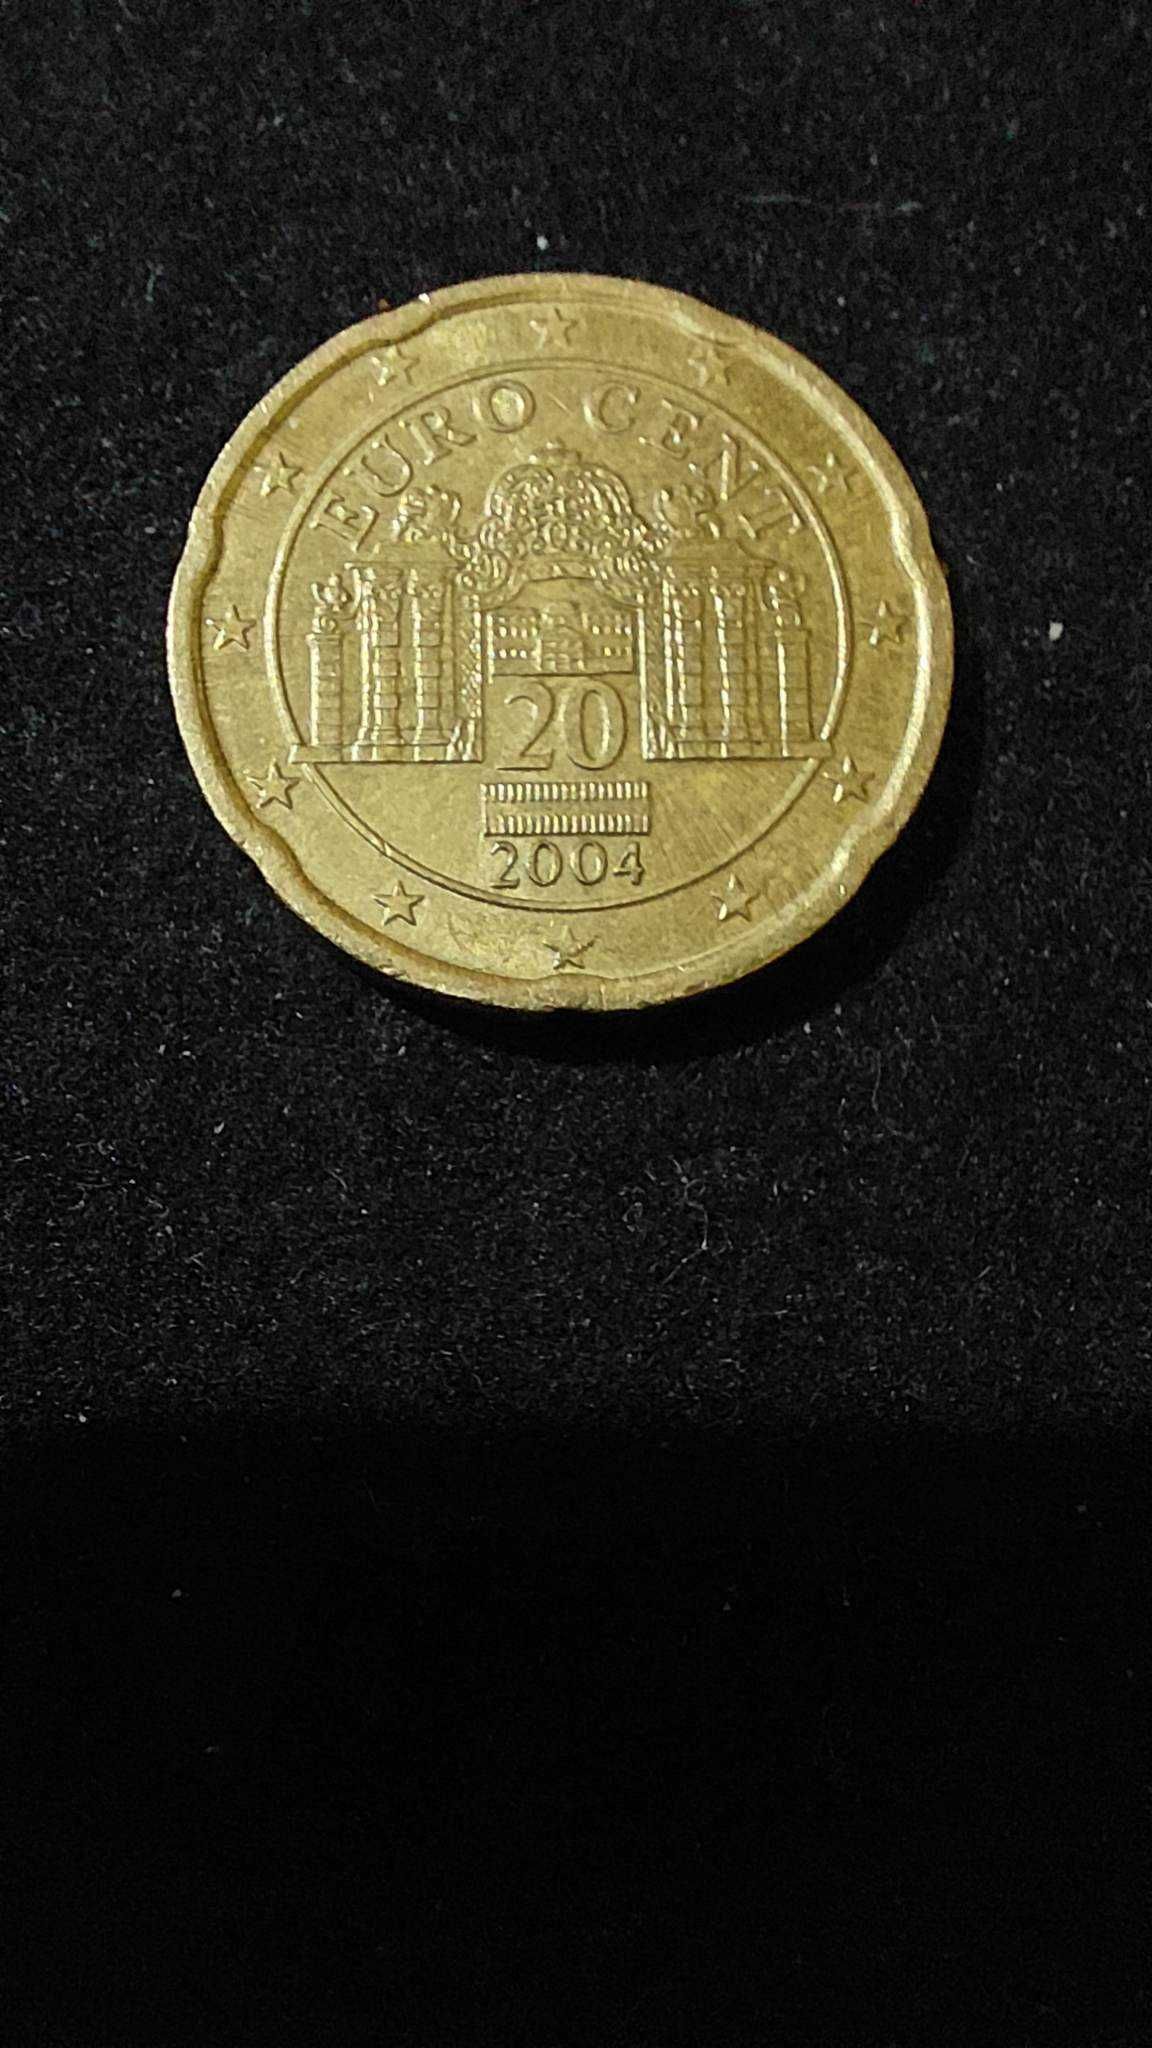 Vand moneda veche 20 eurocenti din Austria anul 2004